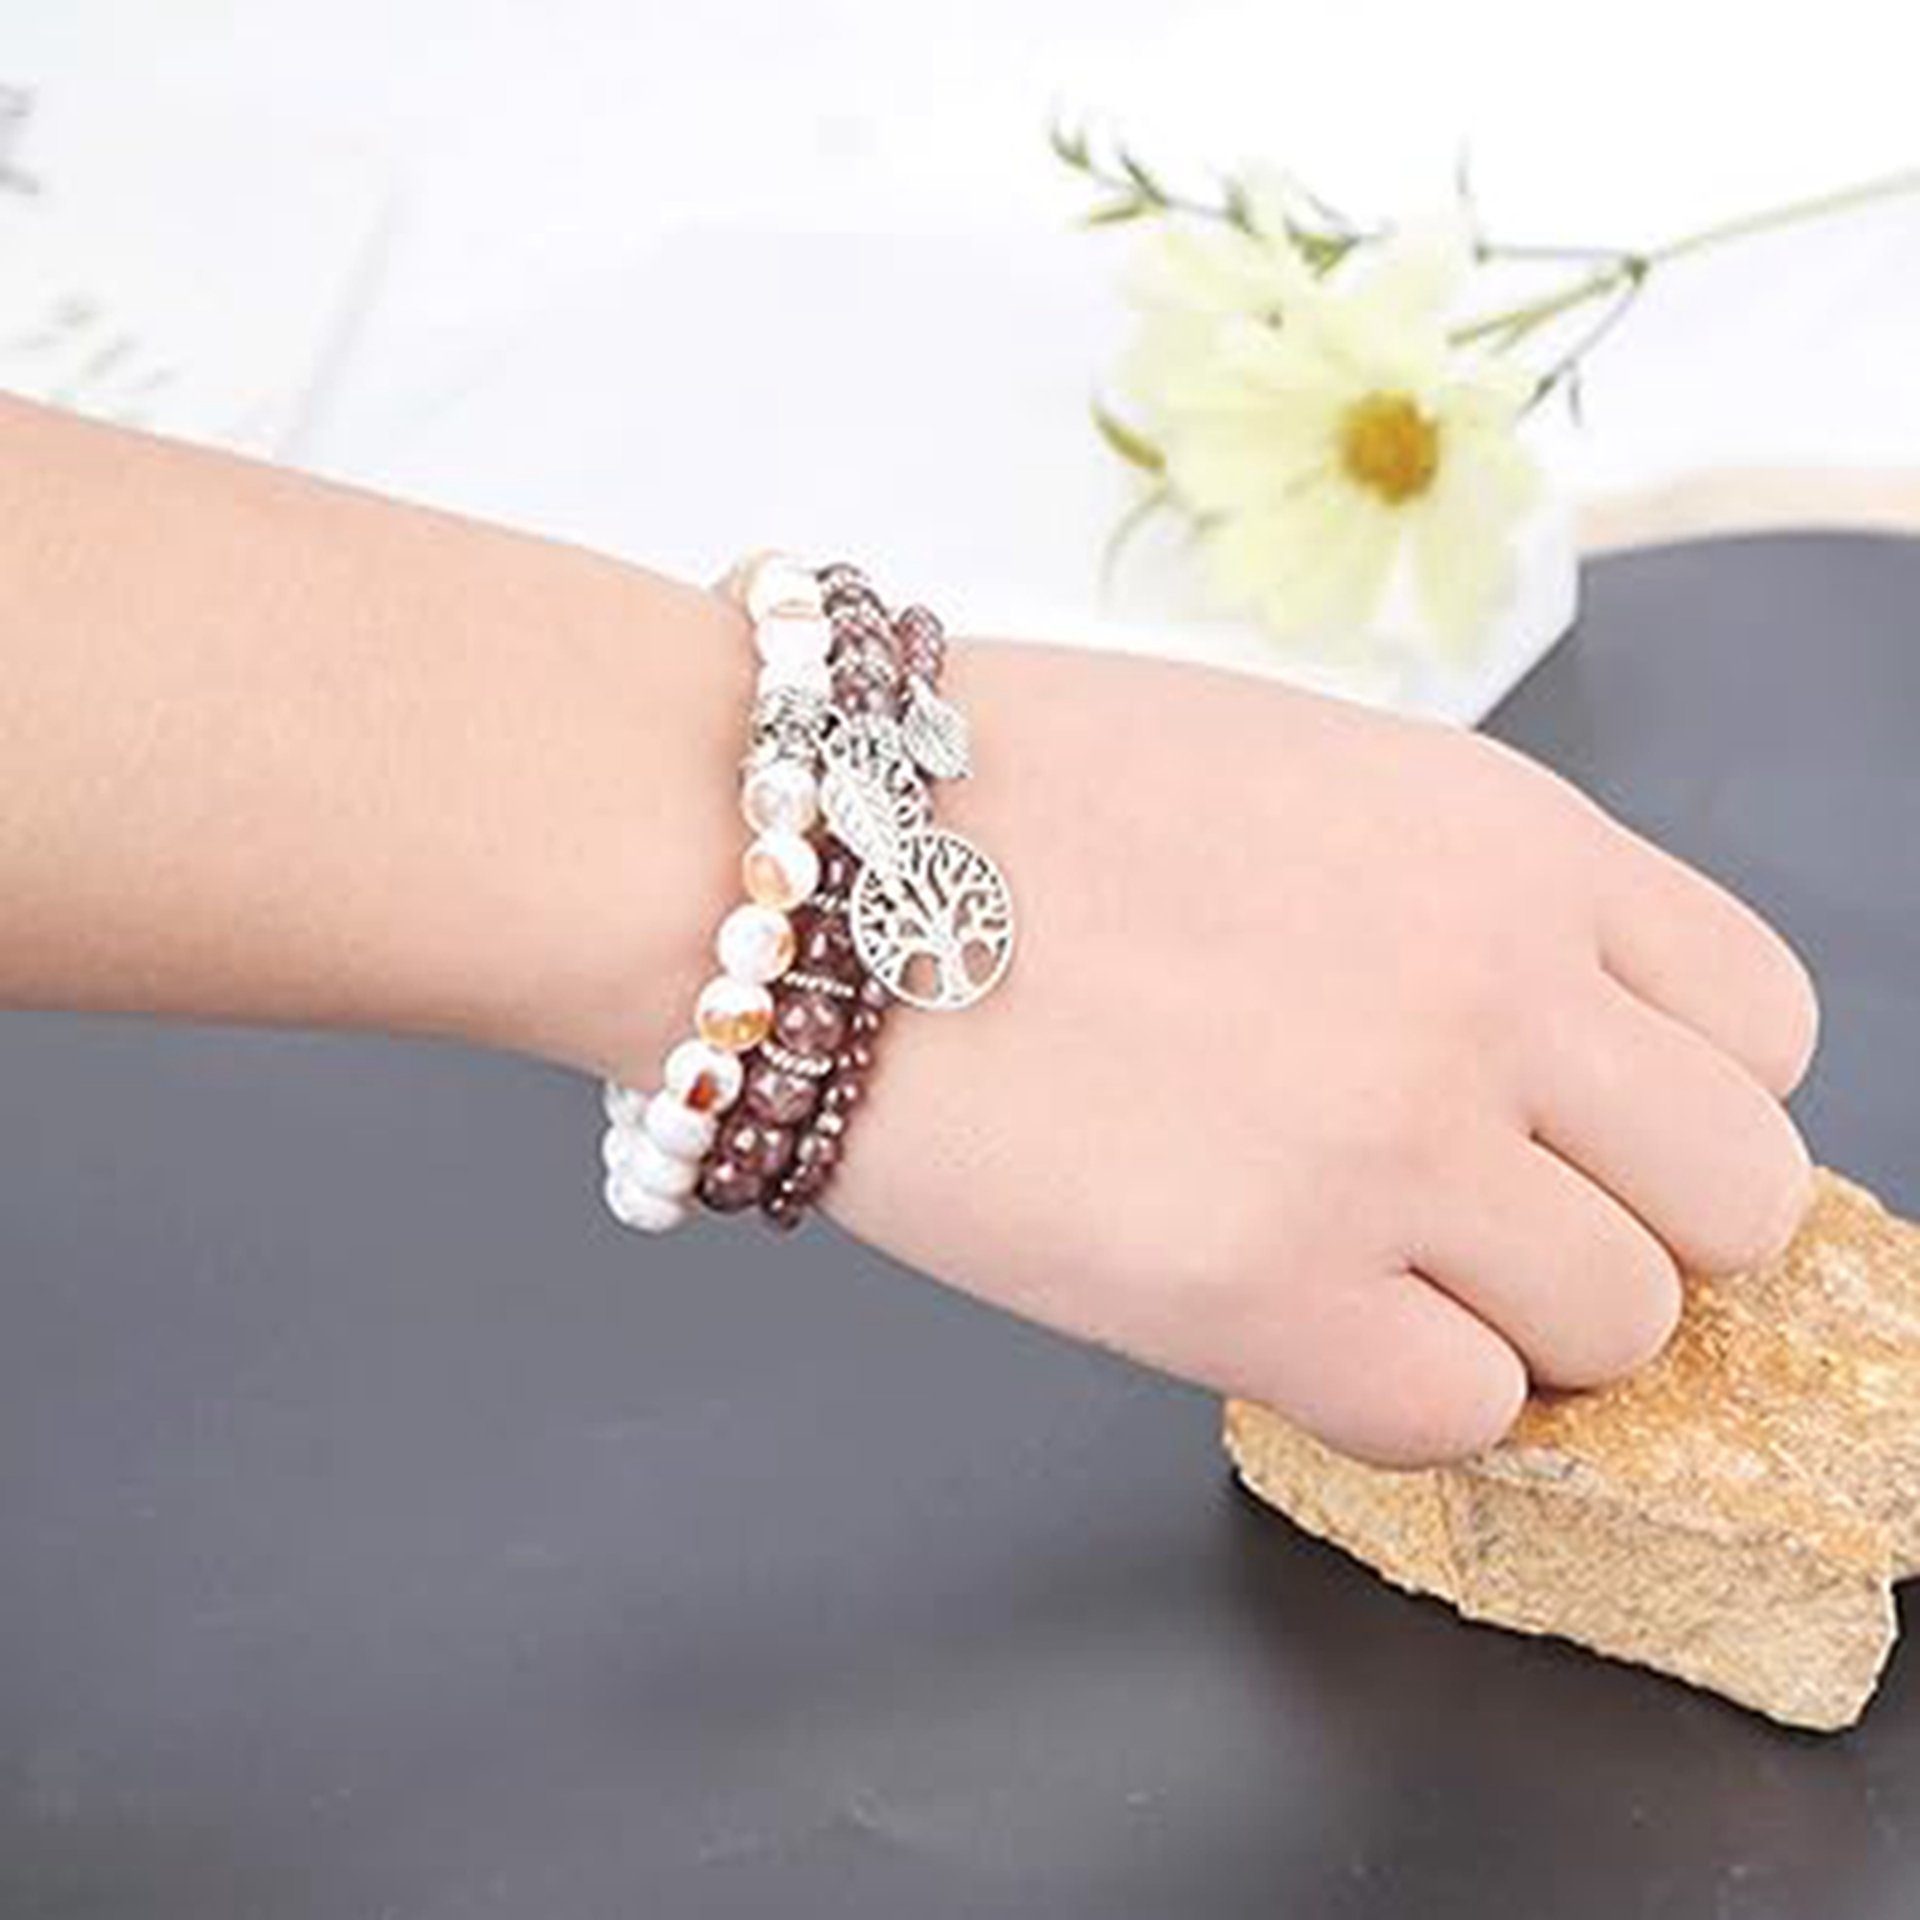 WaKuKa Armband Baum des Stil6 Onyx-Edelstein-Chakra-Perlen-Armband-Set Lebens